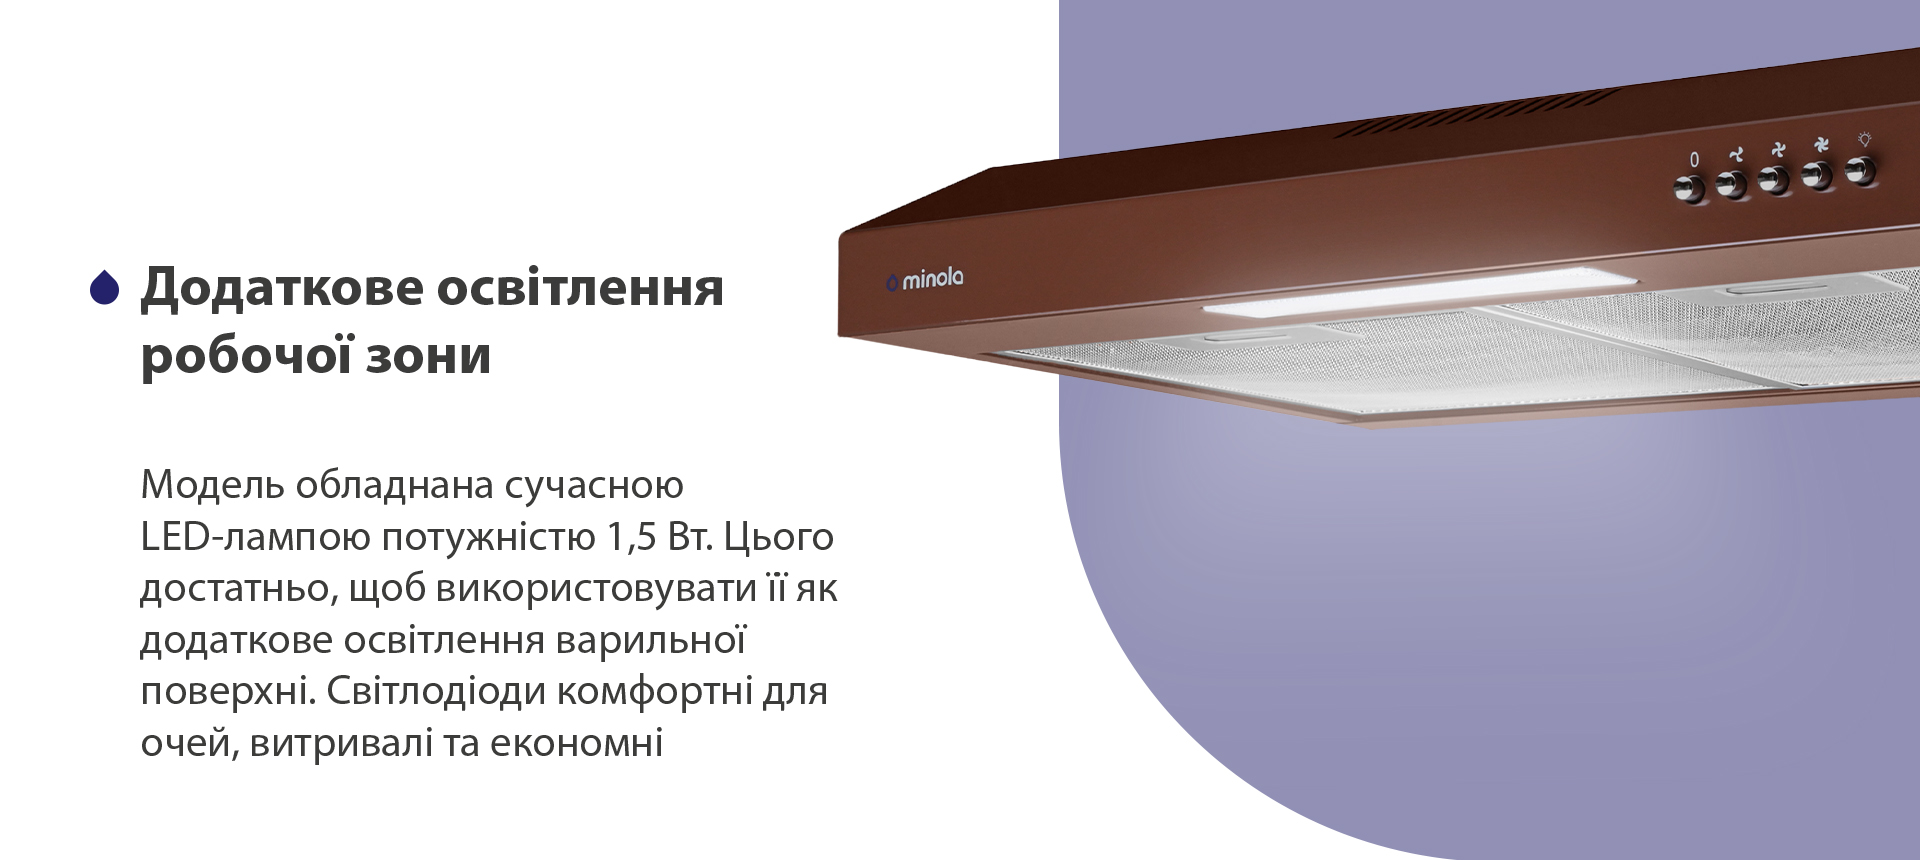 Модель обладнана сучасною LED-лампою потужністю 1,5 Вт. Цього достатньо, щоб використовувати її як додаткове освітлення варильної поверхні. Світлодіоди комфортні для очей, витривалі та економні